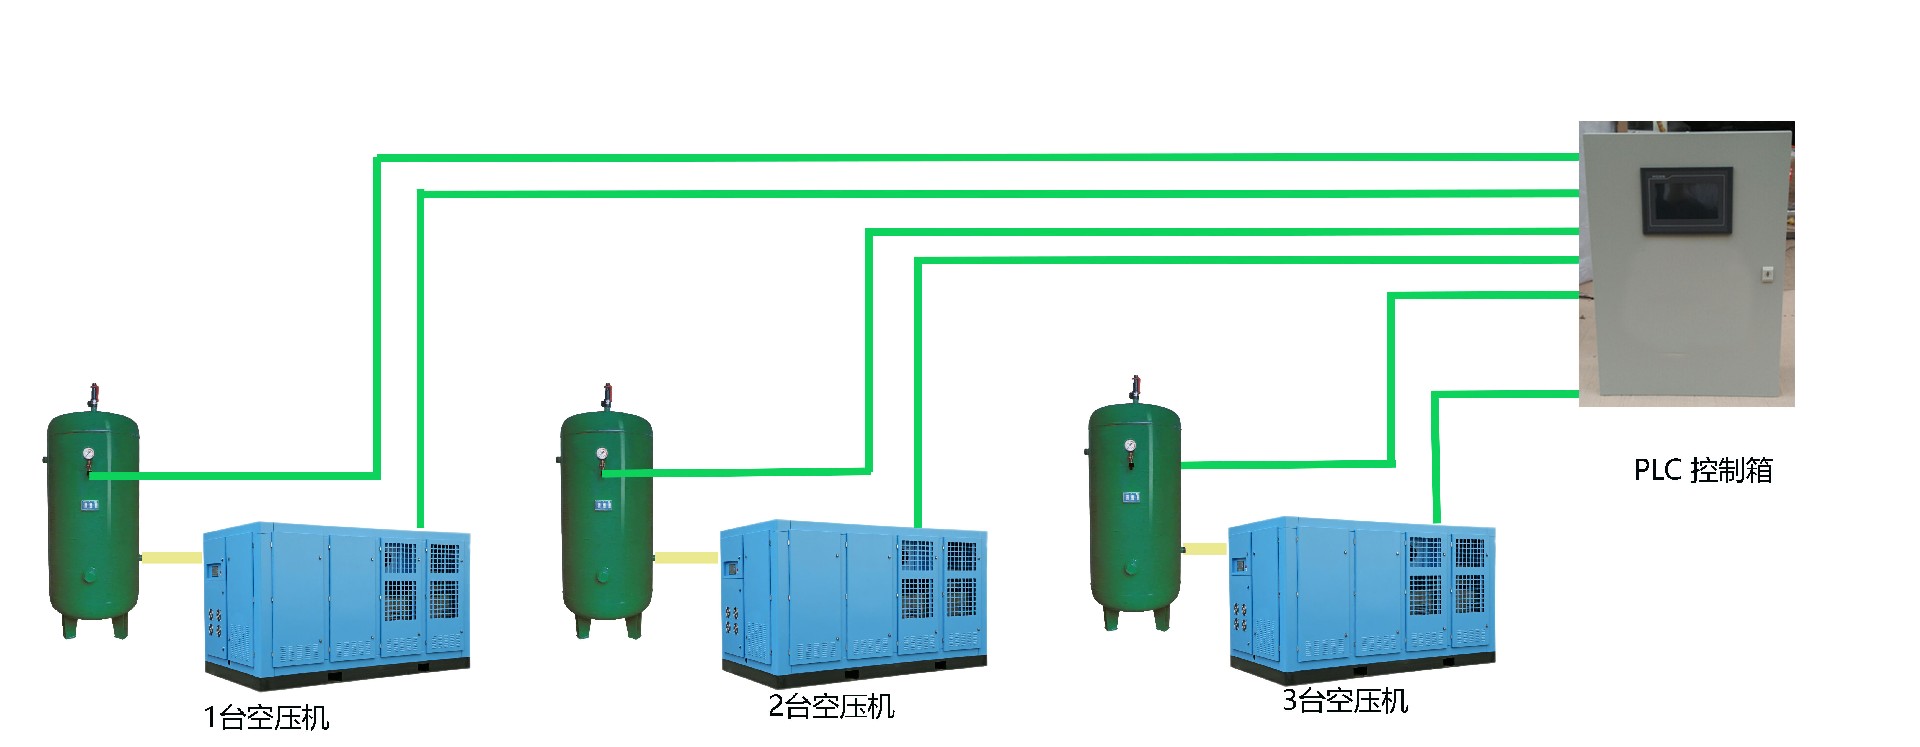 空压机在线监控PLC箱系统图3台空压机PLC.jpg